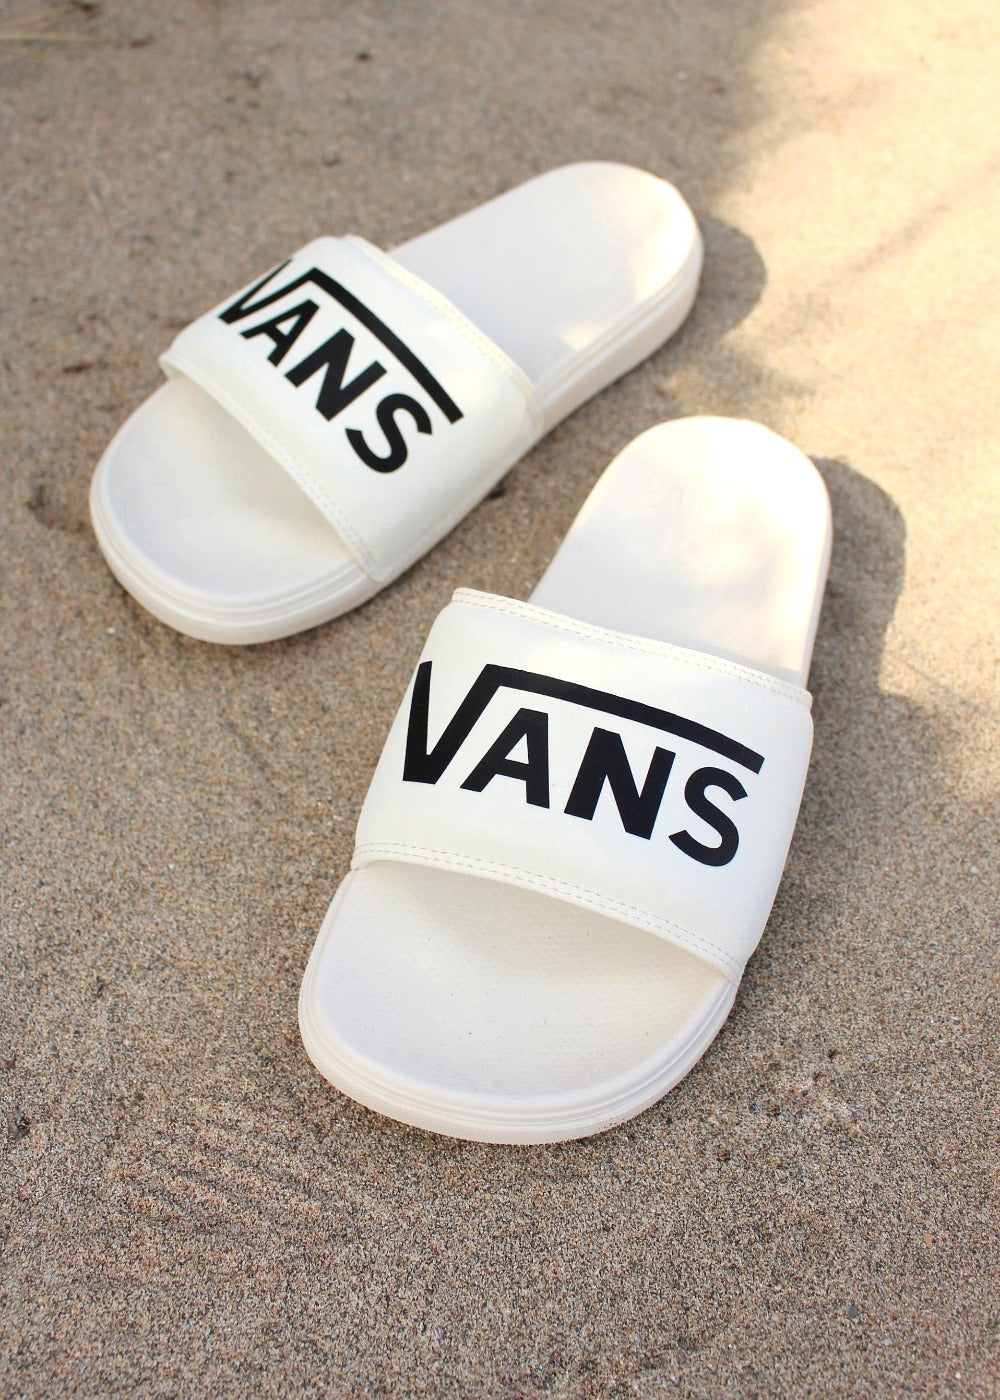 La Costa Slide Sandals by Vans